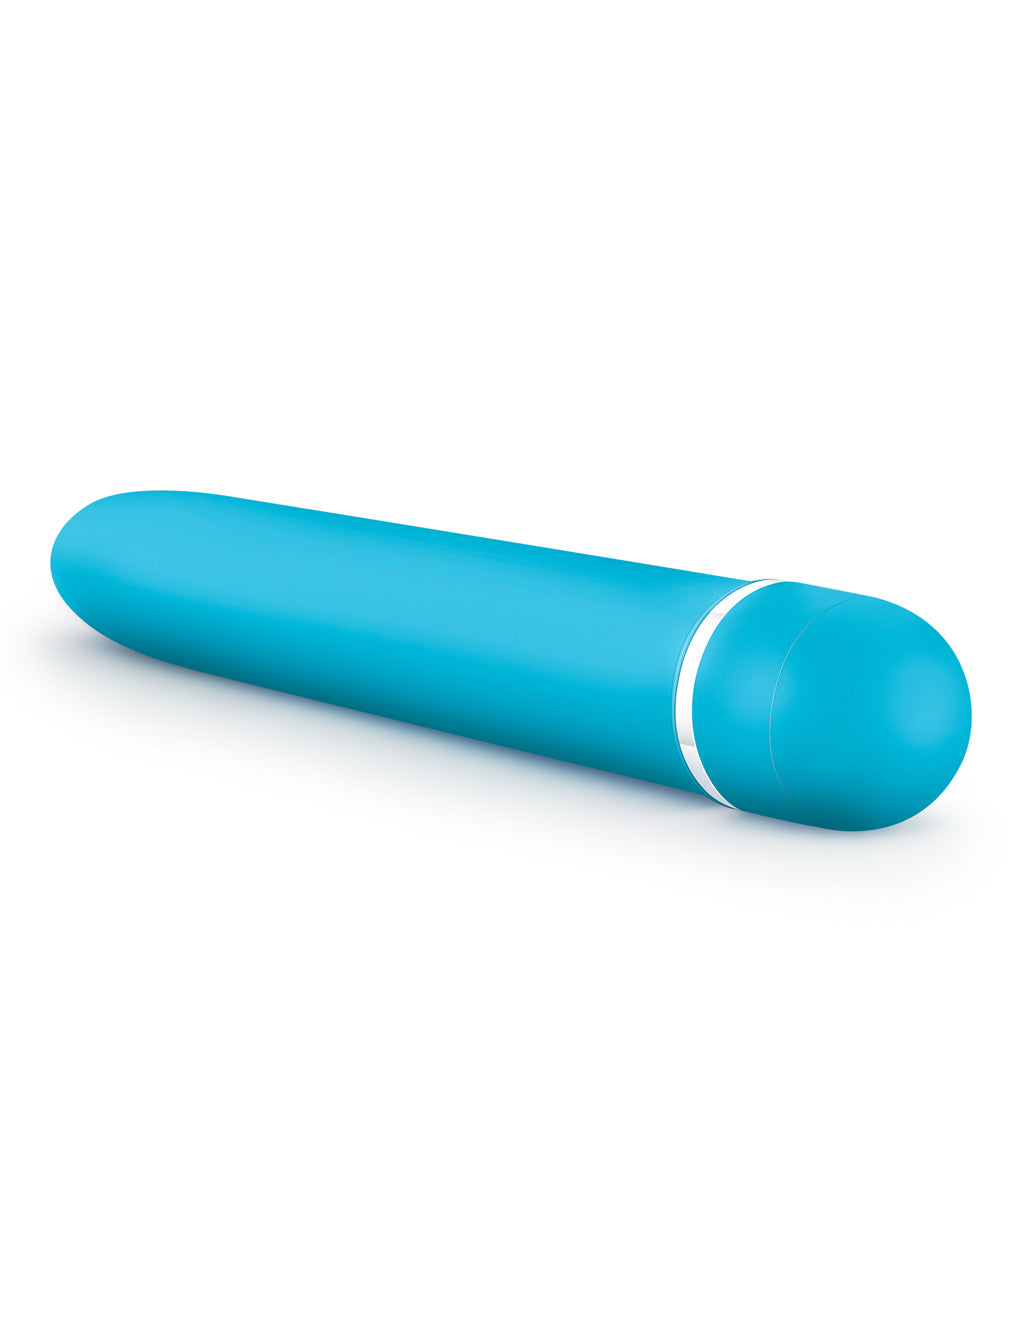 Rose Luxuriate Vibrator- Blue- Bottom